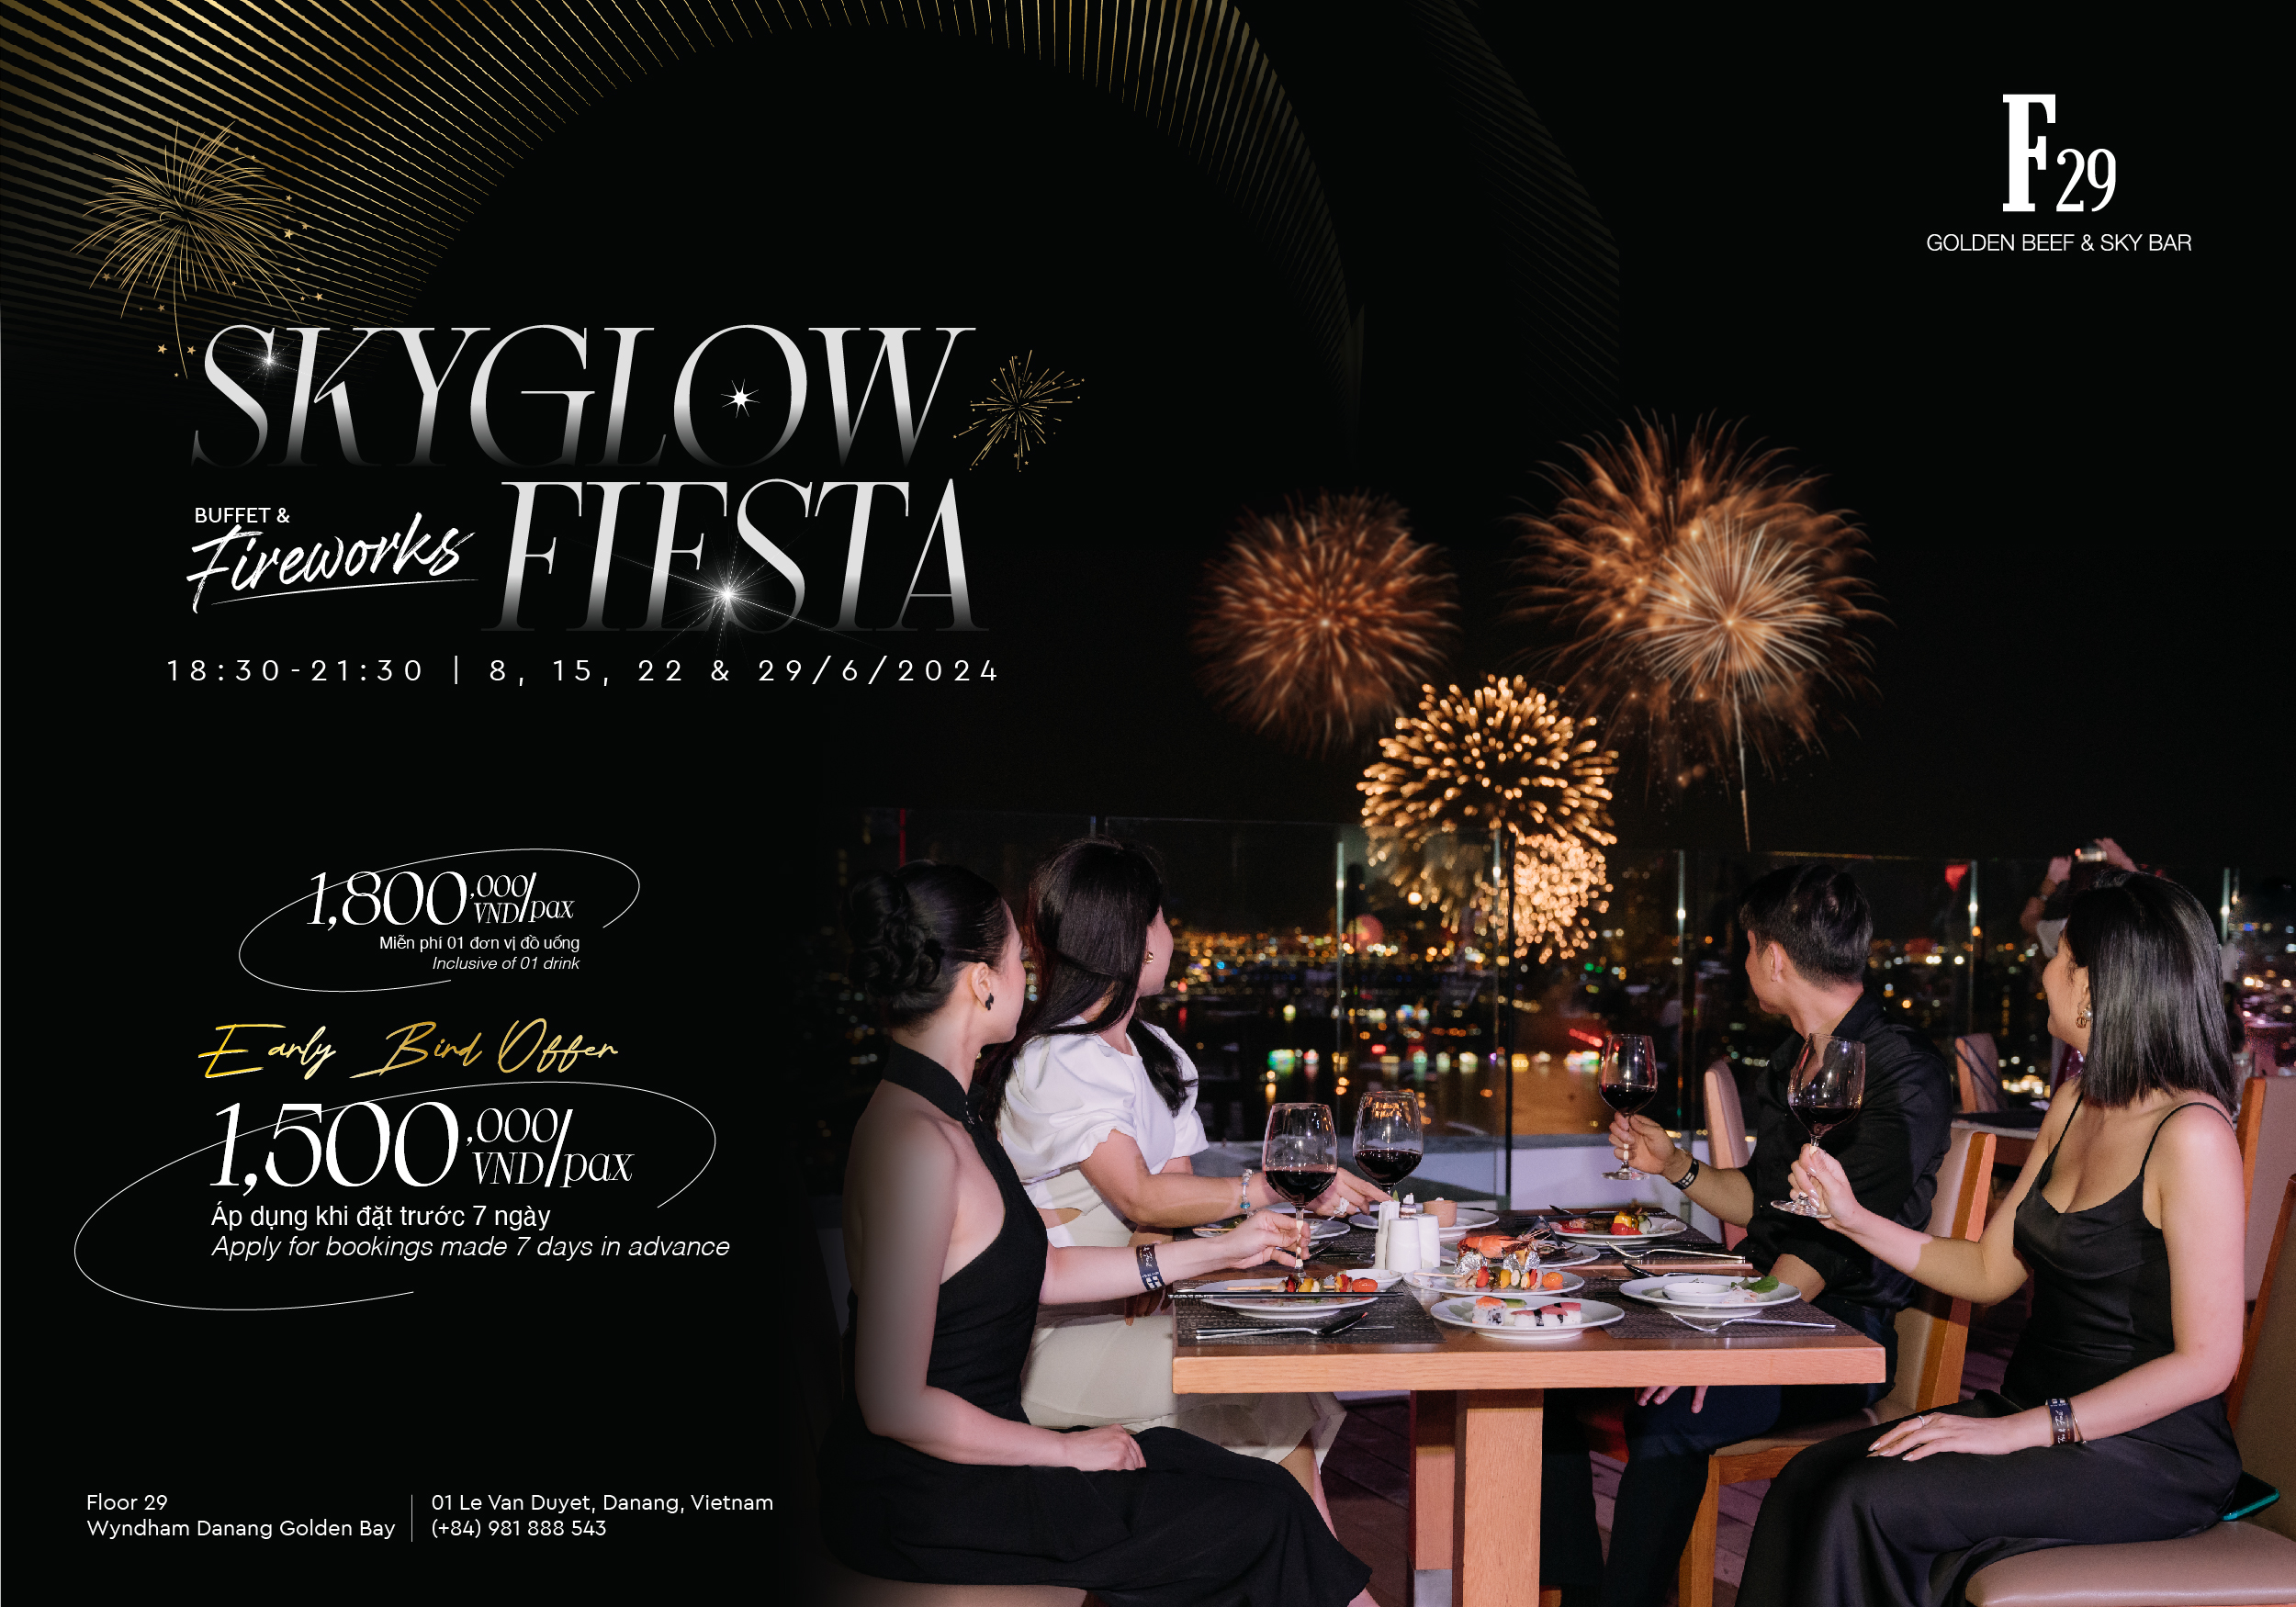 Skyglow Fiesta – Tiệc buffet thượng hạng ngắm pháo hoa tại F29 Golden Beef & Sky Bar